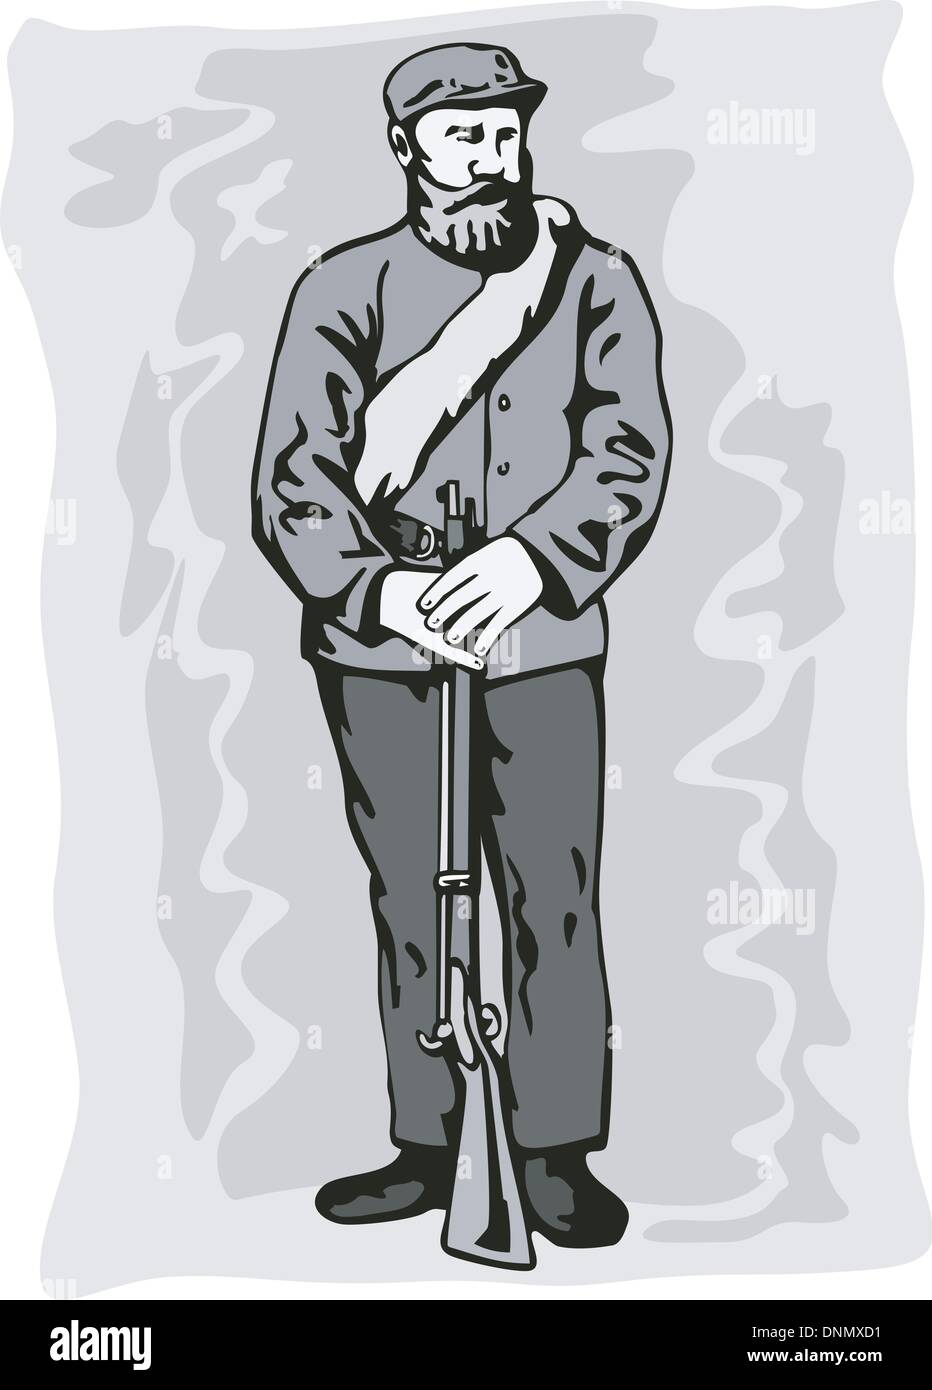 Illustration de Civil War soldier debout tenant un fusil fait en style rétro. Illustration de Vecteur